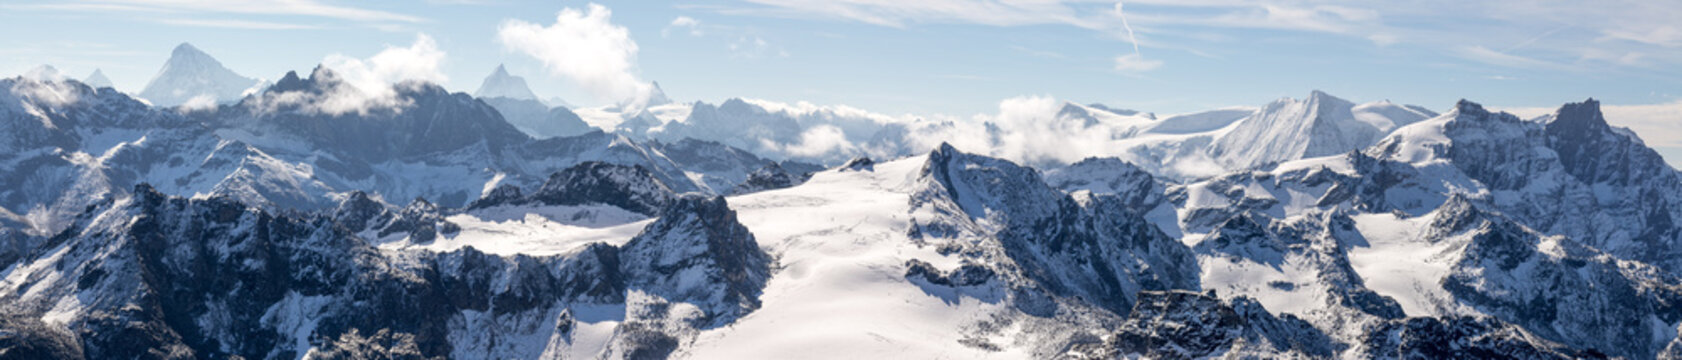 panorama sur les chaines de montagnes des Alpes avec un glacier au centre